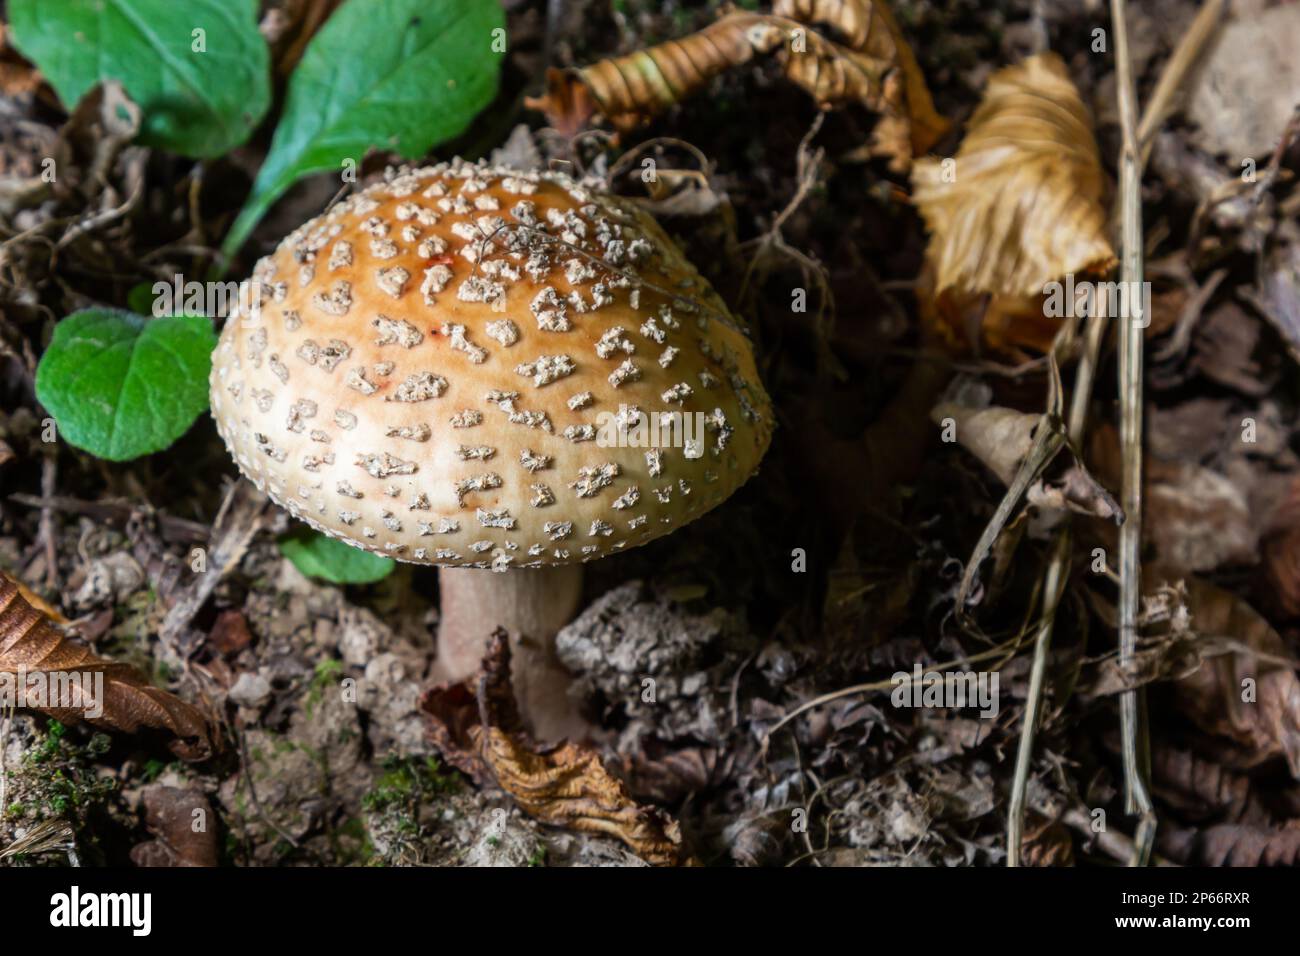 este hongo es una amanita rubescens y crece en el bosque. Foto de stock